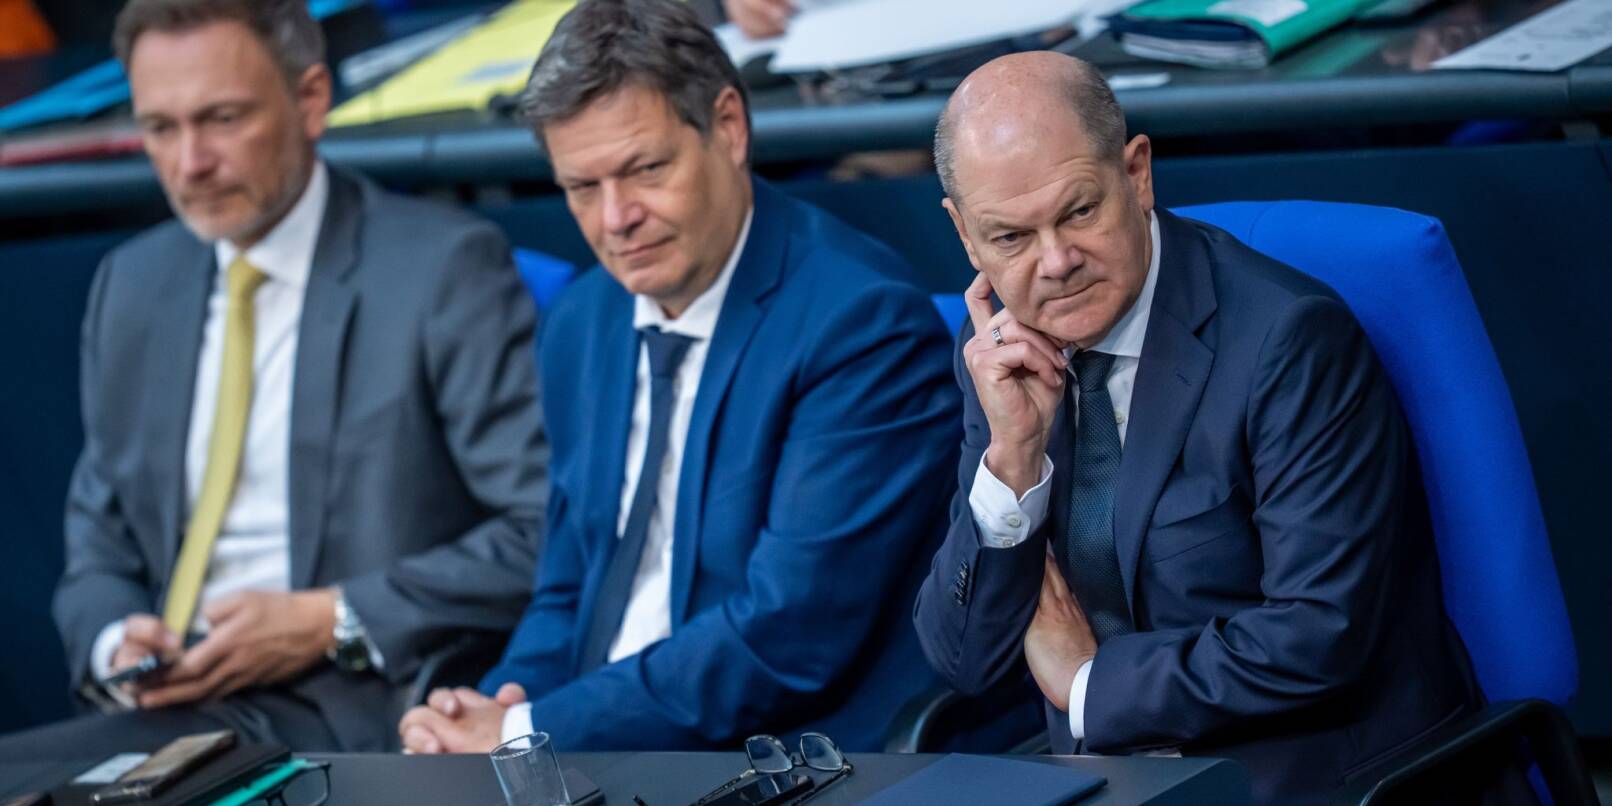 Kanzler Olaf Scholz (SPD) mit seinen Ministern Robert Habeck (Grüne) und Christian Lindner (FDP). Können die Streitpunkte in der Ampel-Koalition beigelegt werden?